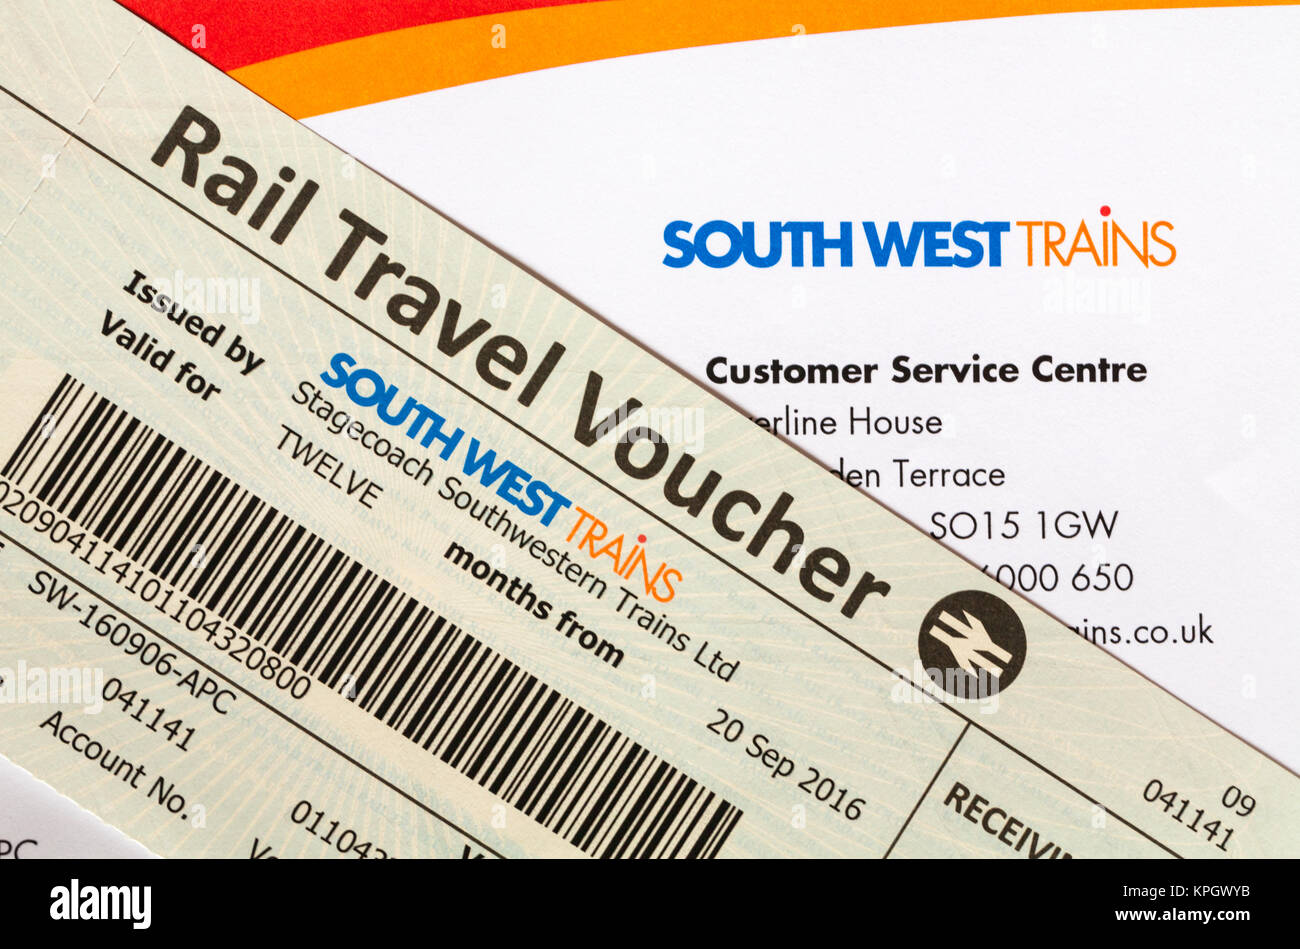 Bon de transport ferroviaire et lettre de South West Trains Centre de service client dans le remboursement des frais de déplacement la compensation du délai Banque D'Images